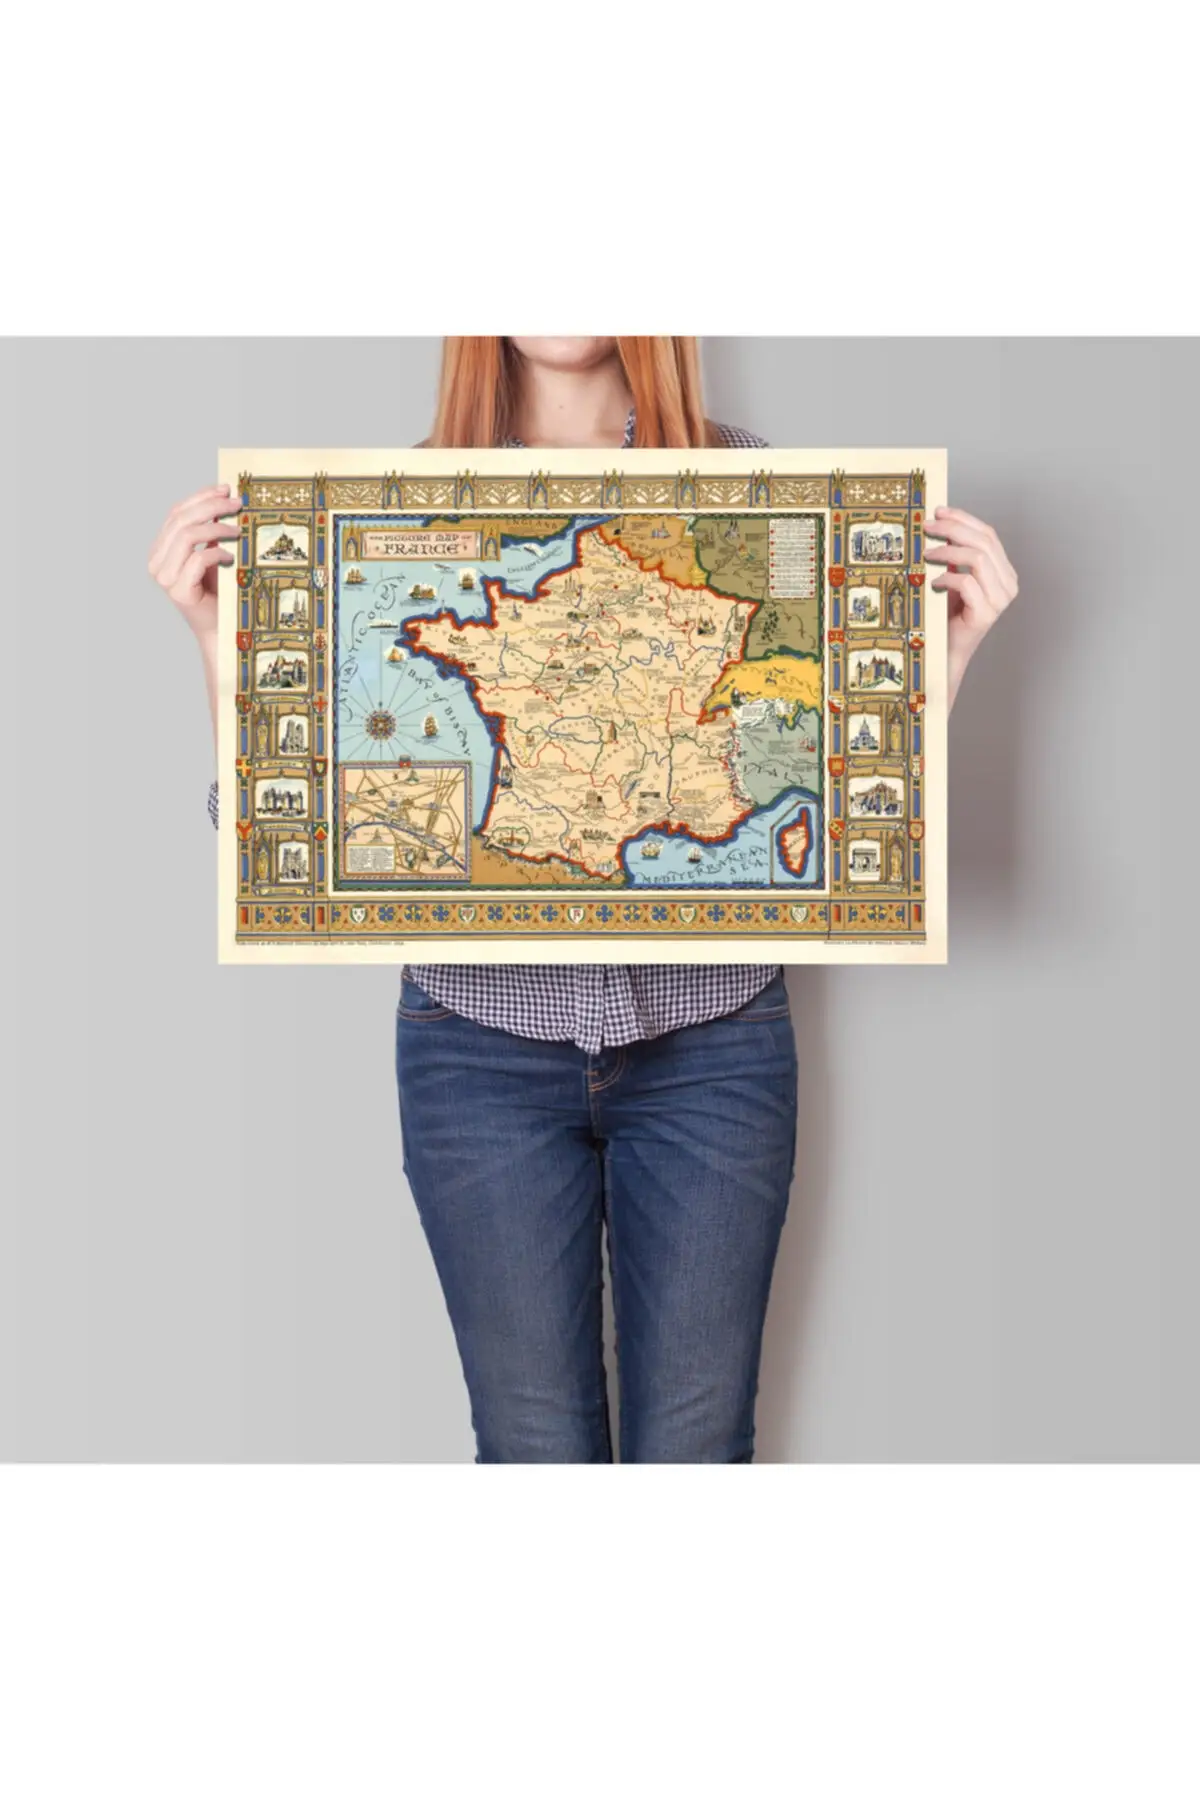 

Франция 1929 декоративная карта города плакат планшетов-карты мира-Франция классическая Карта-большая карта города